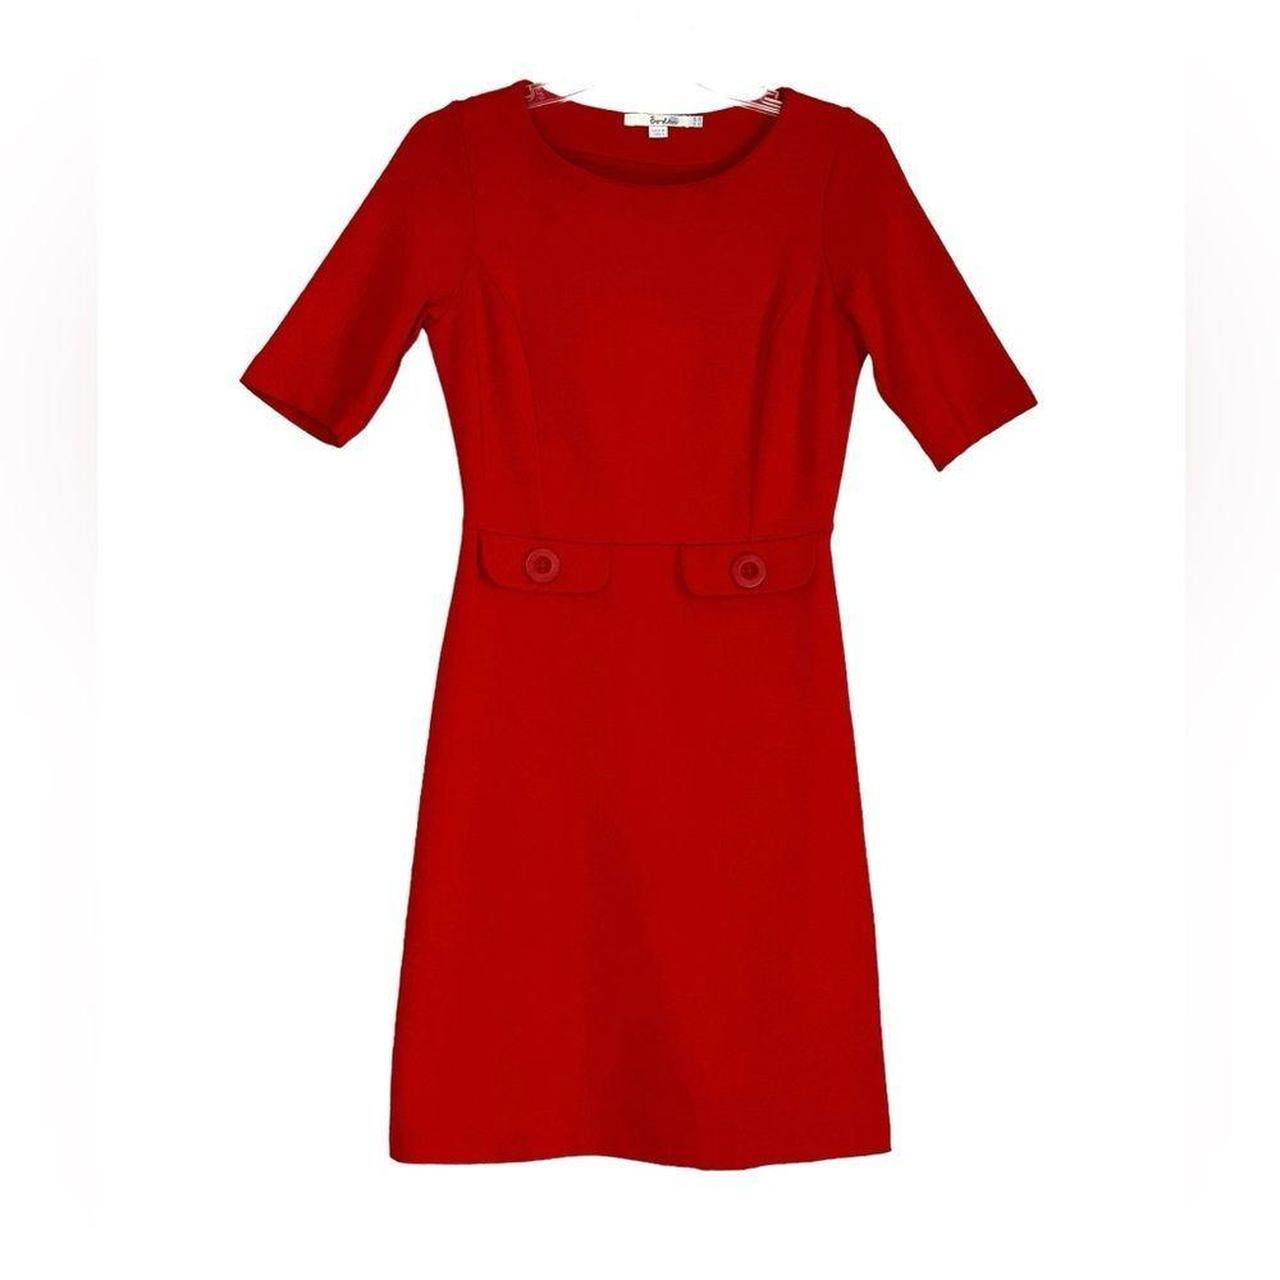 Boden Red Audrey Sheath Dress